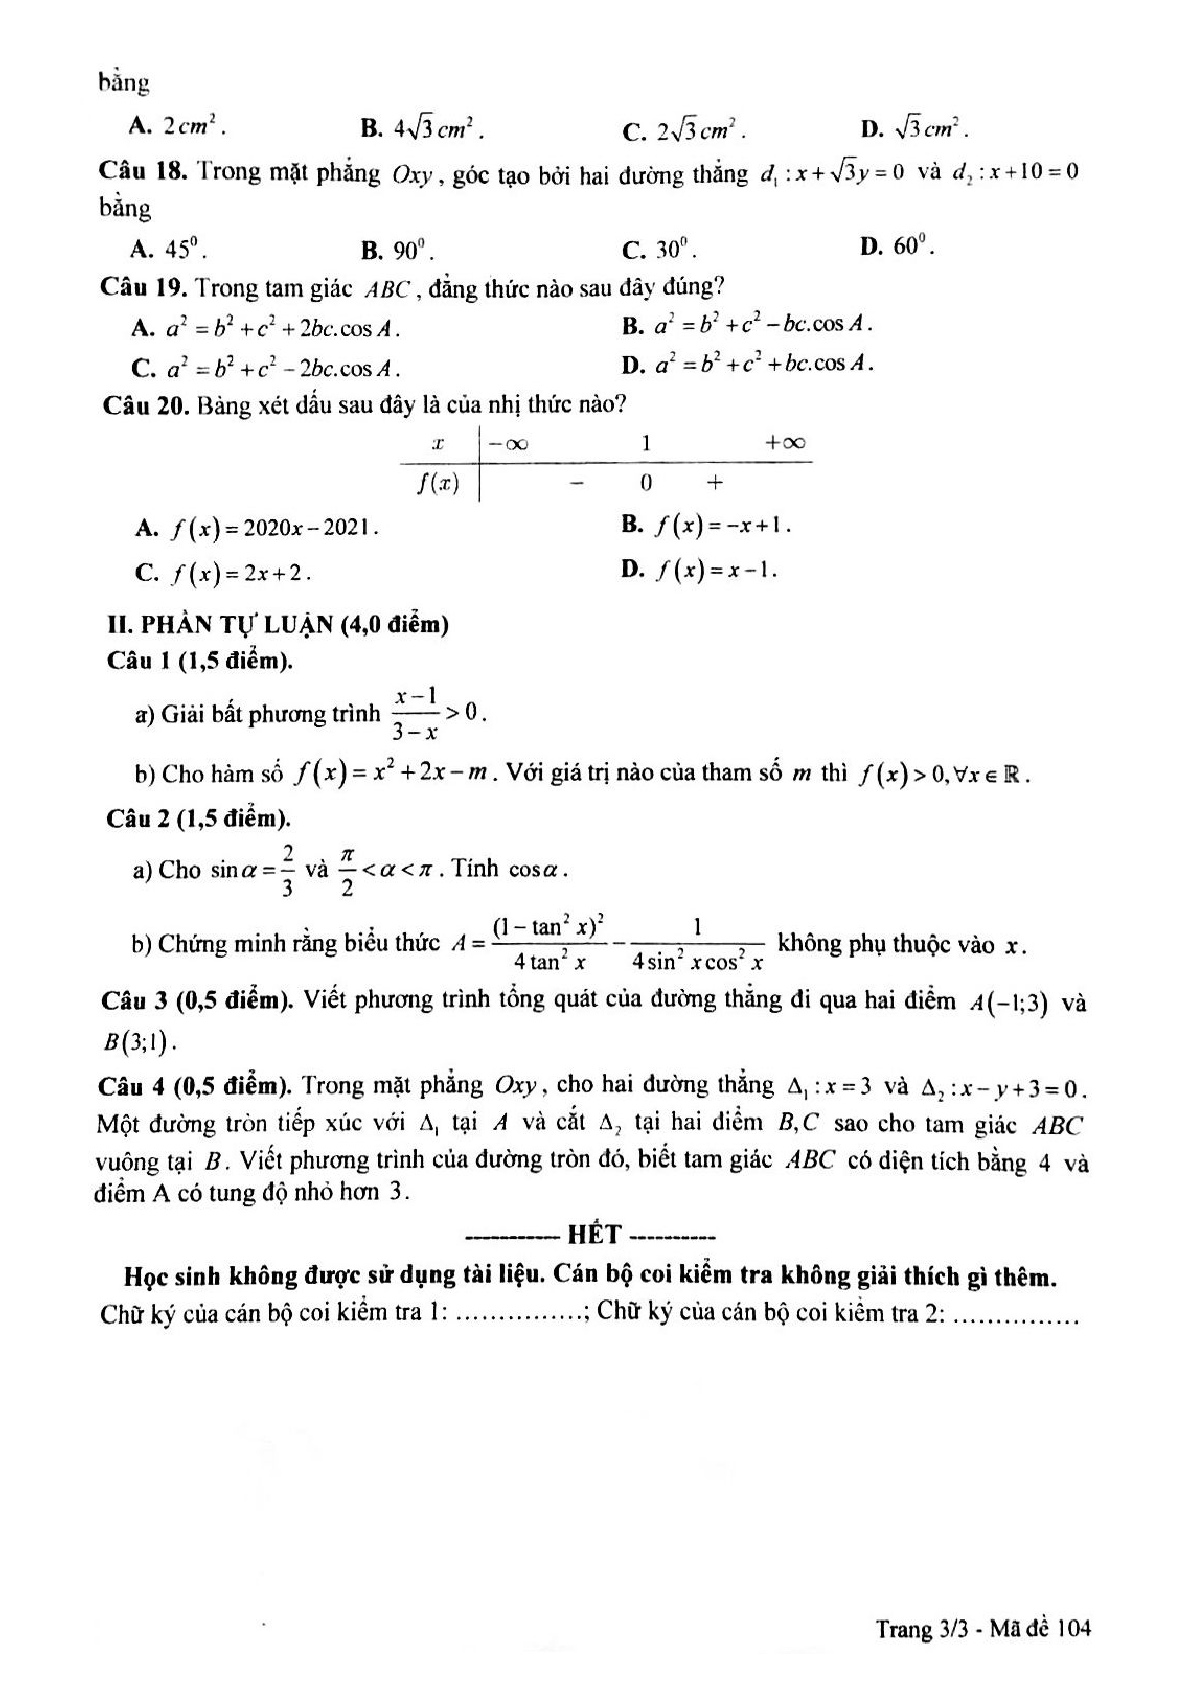 Đề kiểm tra cuối học kì 2 môn toán 10 sở GDKHCN Bạc Liêu năm học 2020-2021 (trang 3)